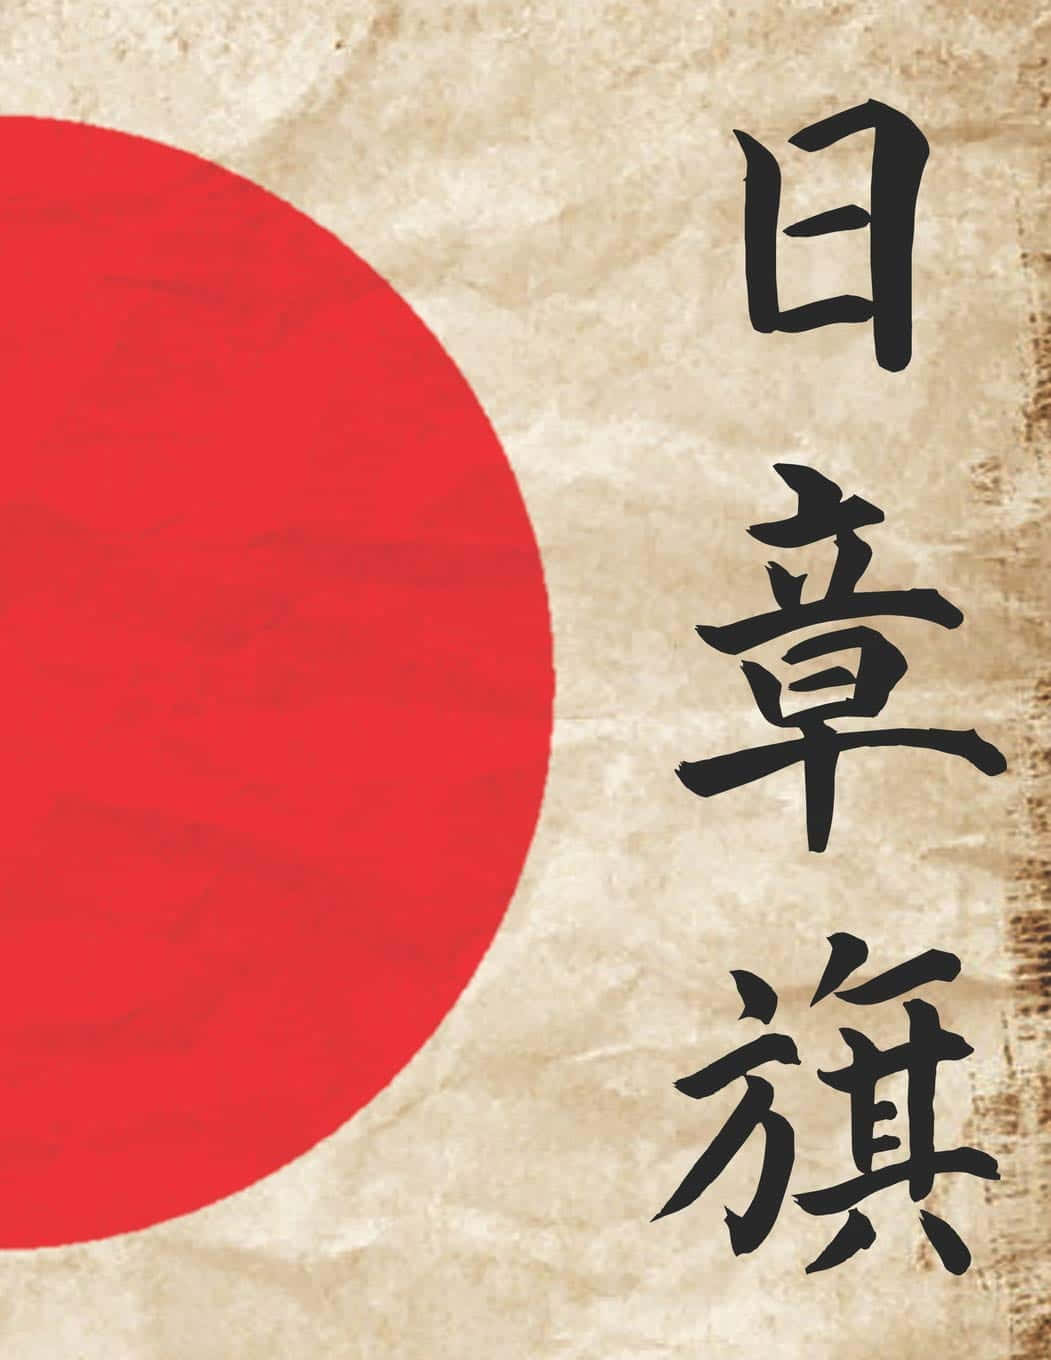 Japanese Flag Calligraphy Art Wallpaper